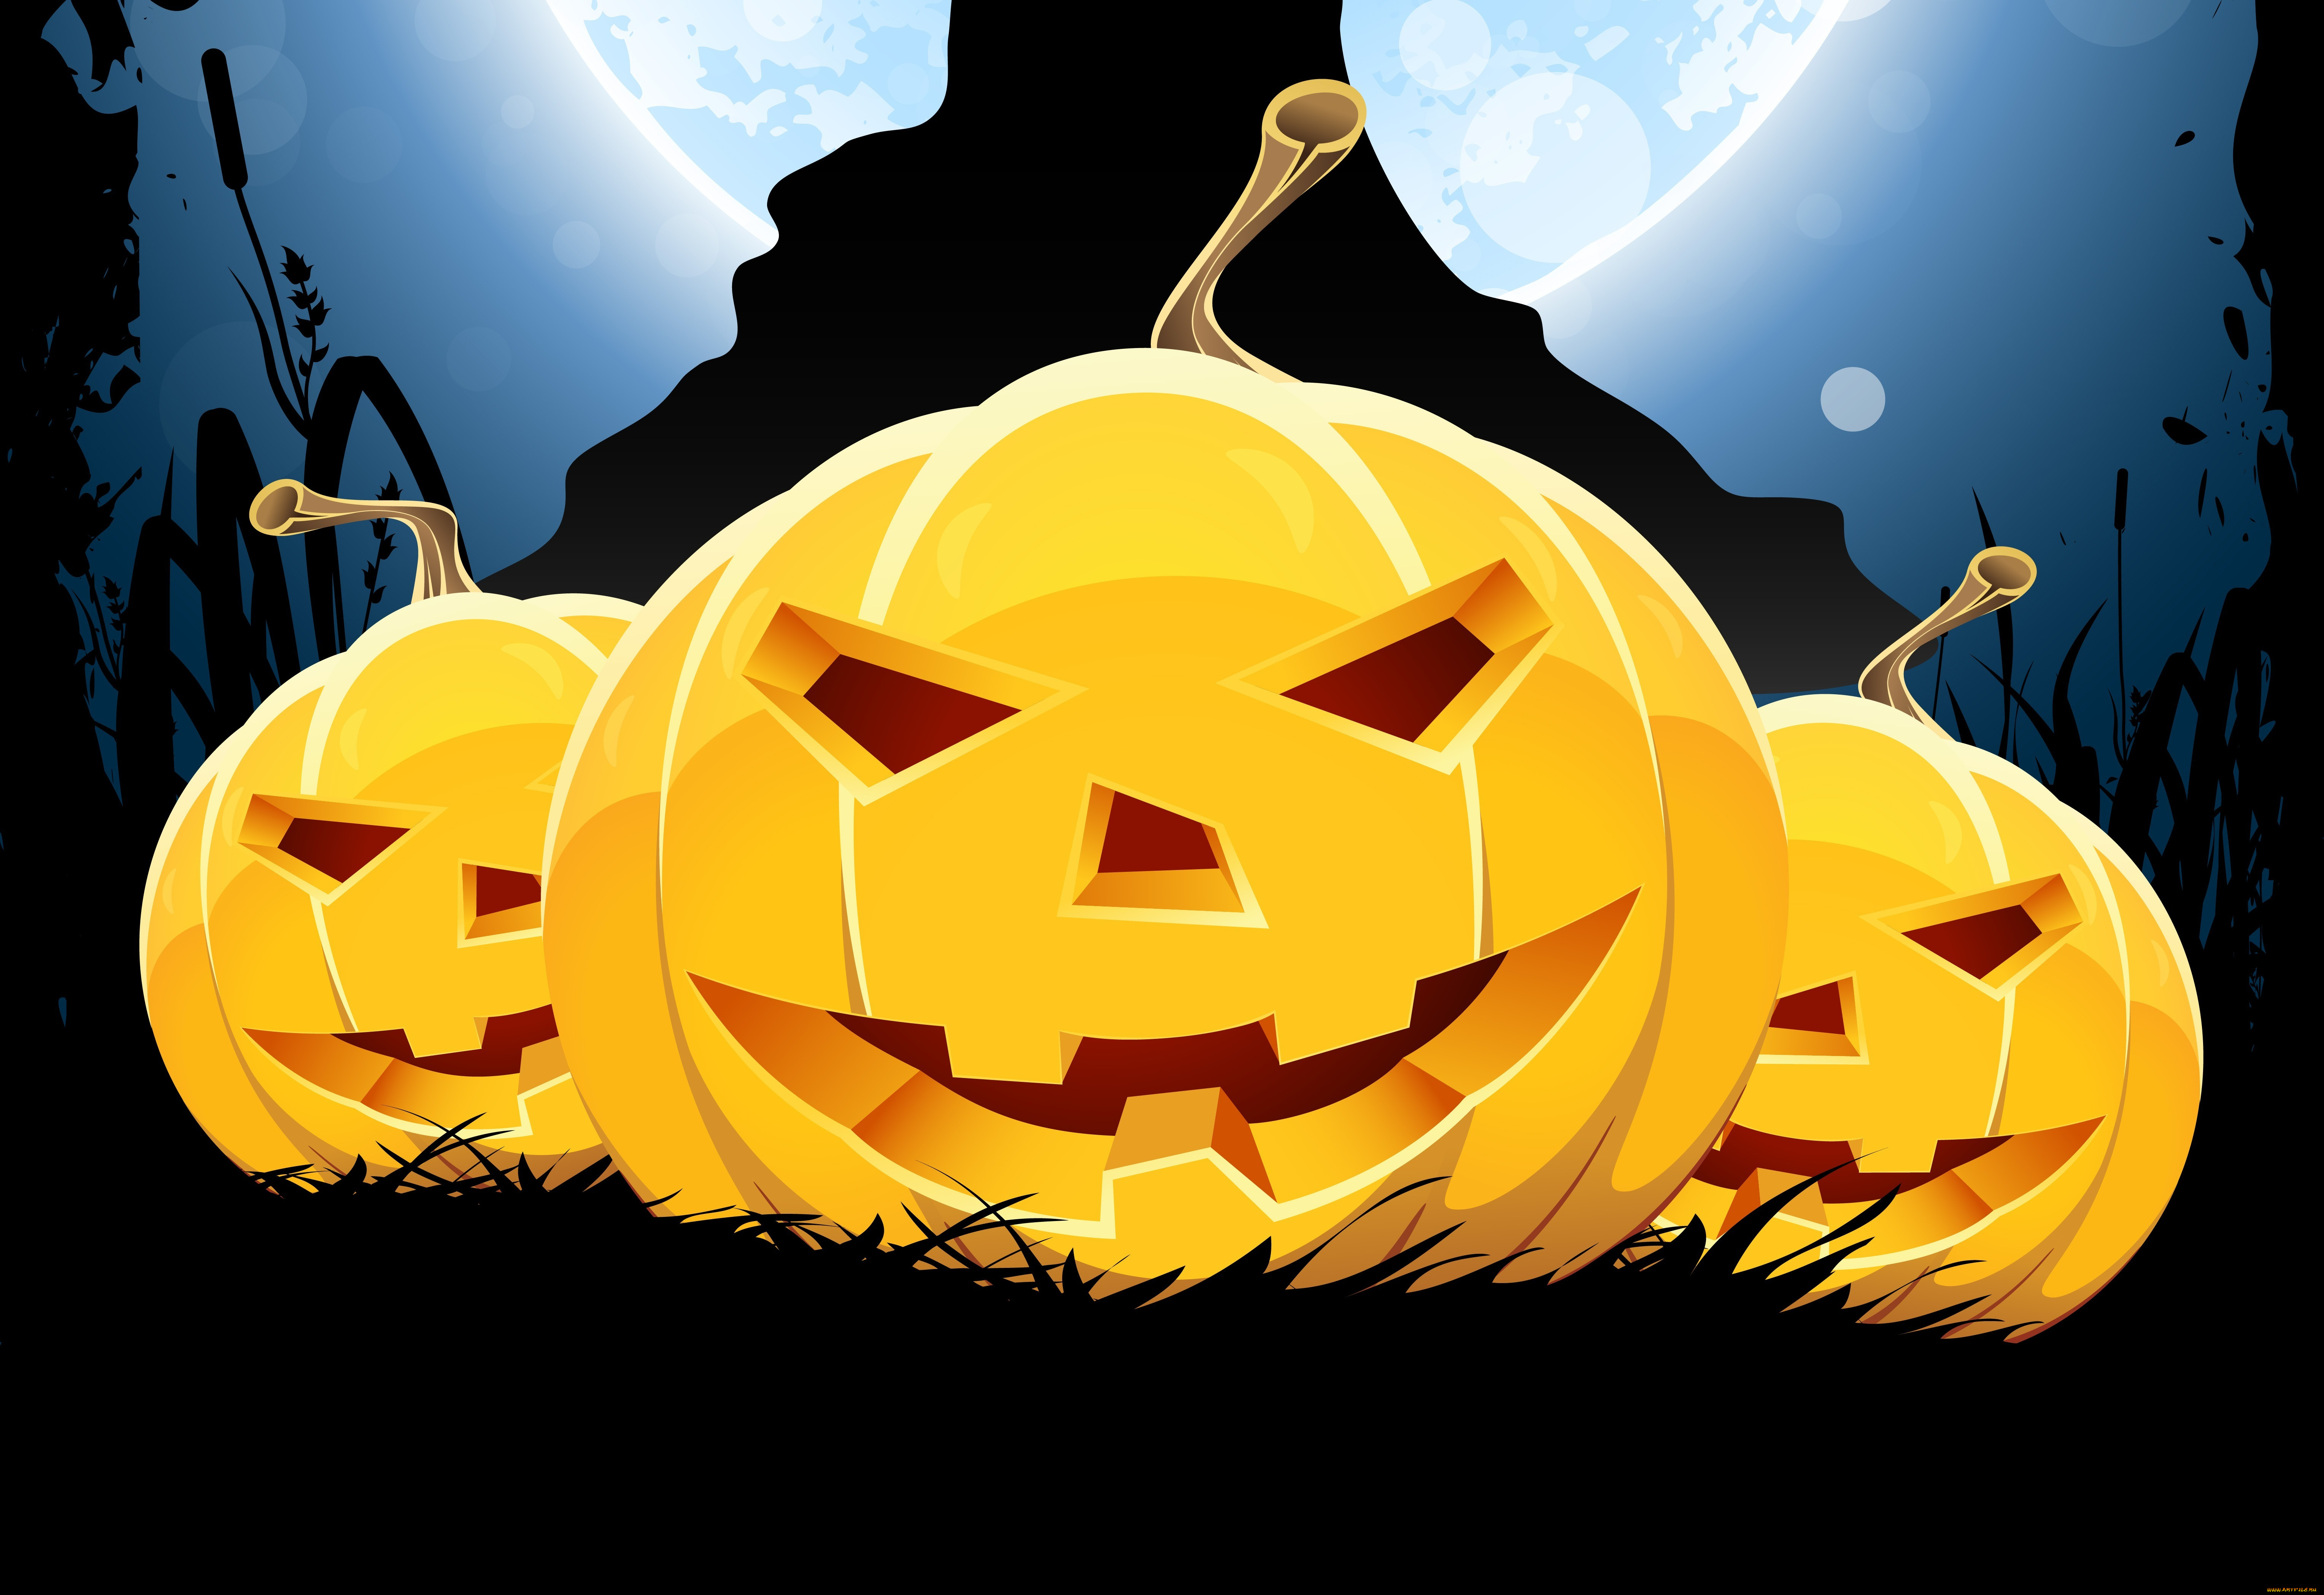 праздничные, хэллоуин, страшилки, horror, stories, улыбка, smile, fun, pumpkin, тыквы, halloween, holiday